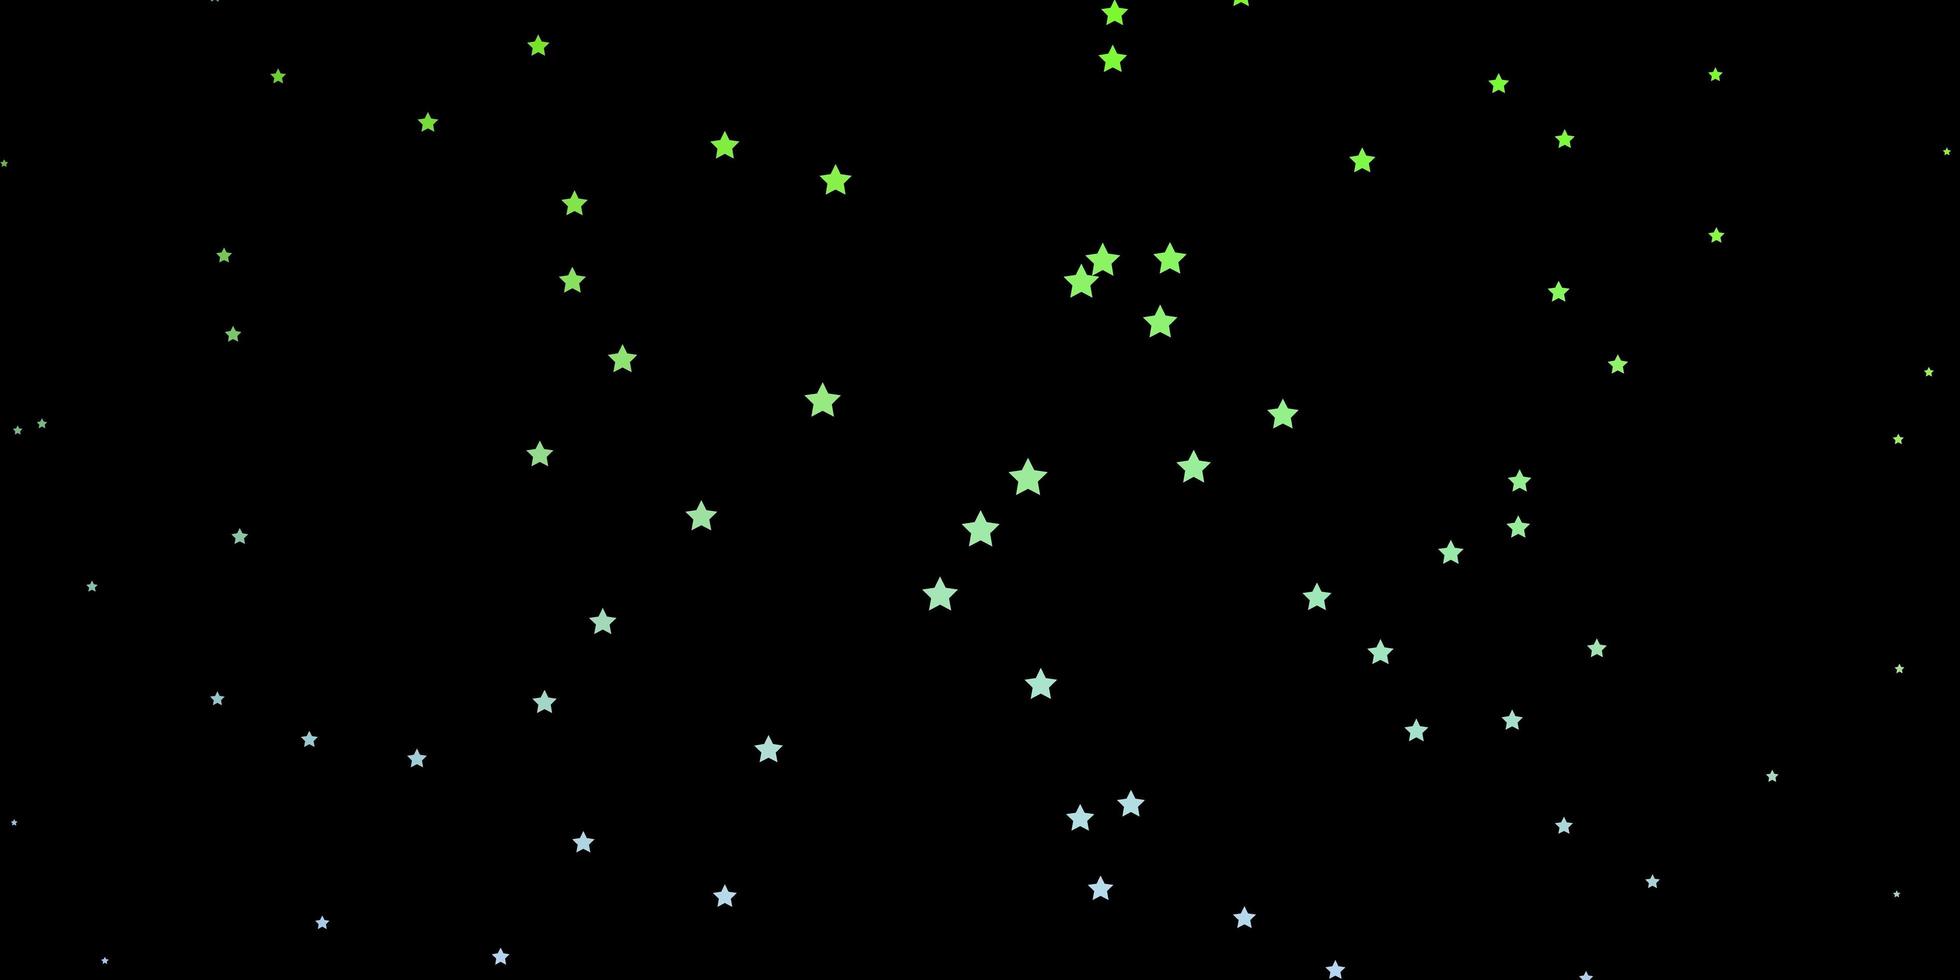 layout de vetor rosa e verde escuro com estrelas brilhantes.